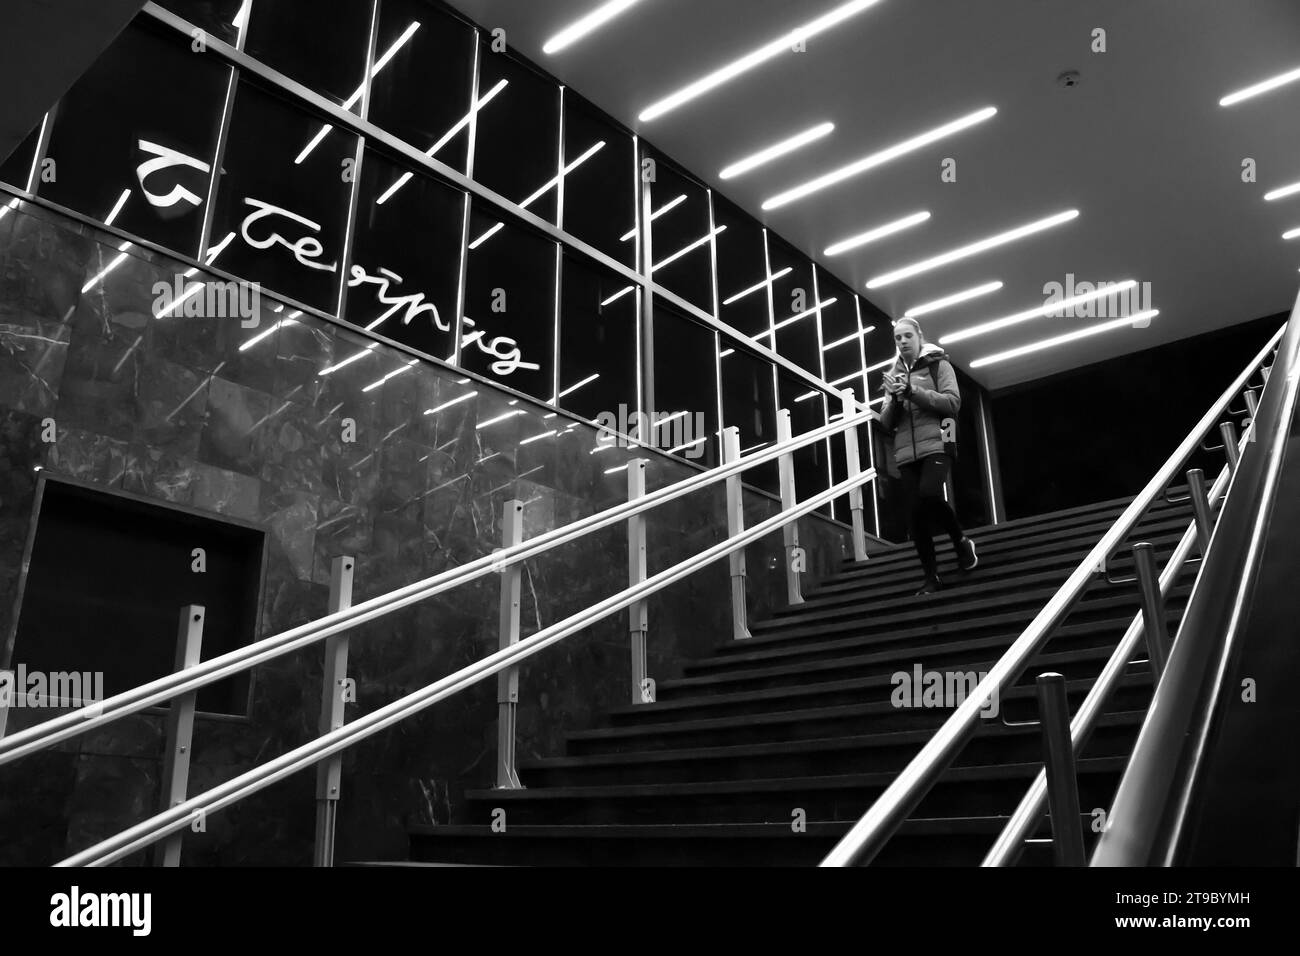 Belgrado, Serbia - 20 novembre 2023: Ragazza adolescente che scende le scale della metropolitana, con luci interne riflettenti e insegna dei grandi magazzini di Belgrado Foto Stock